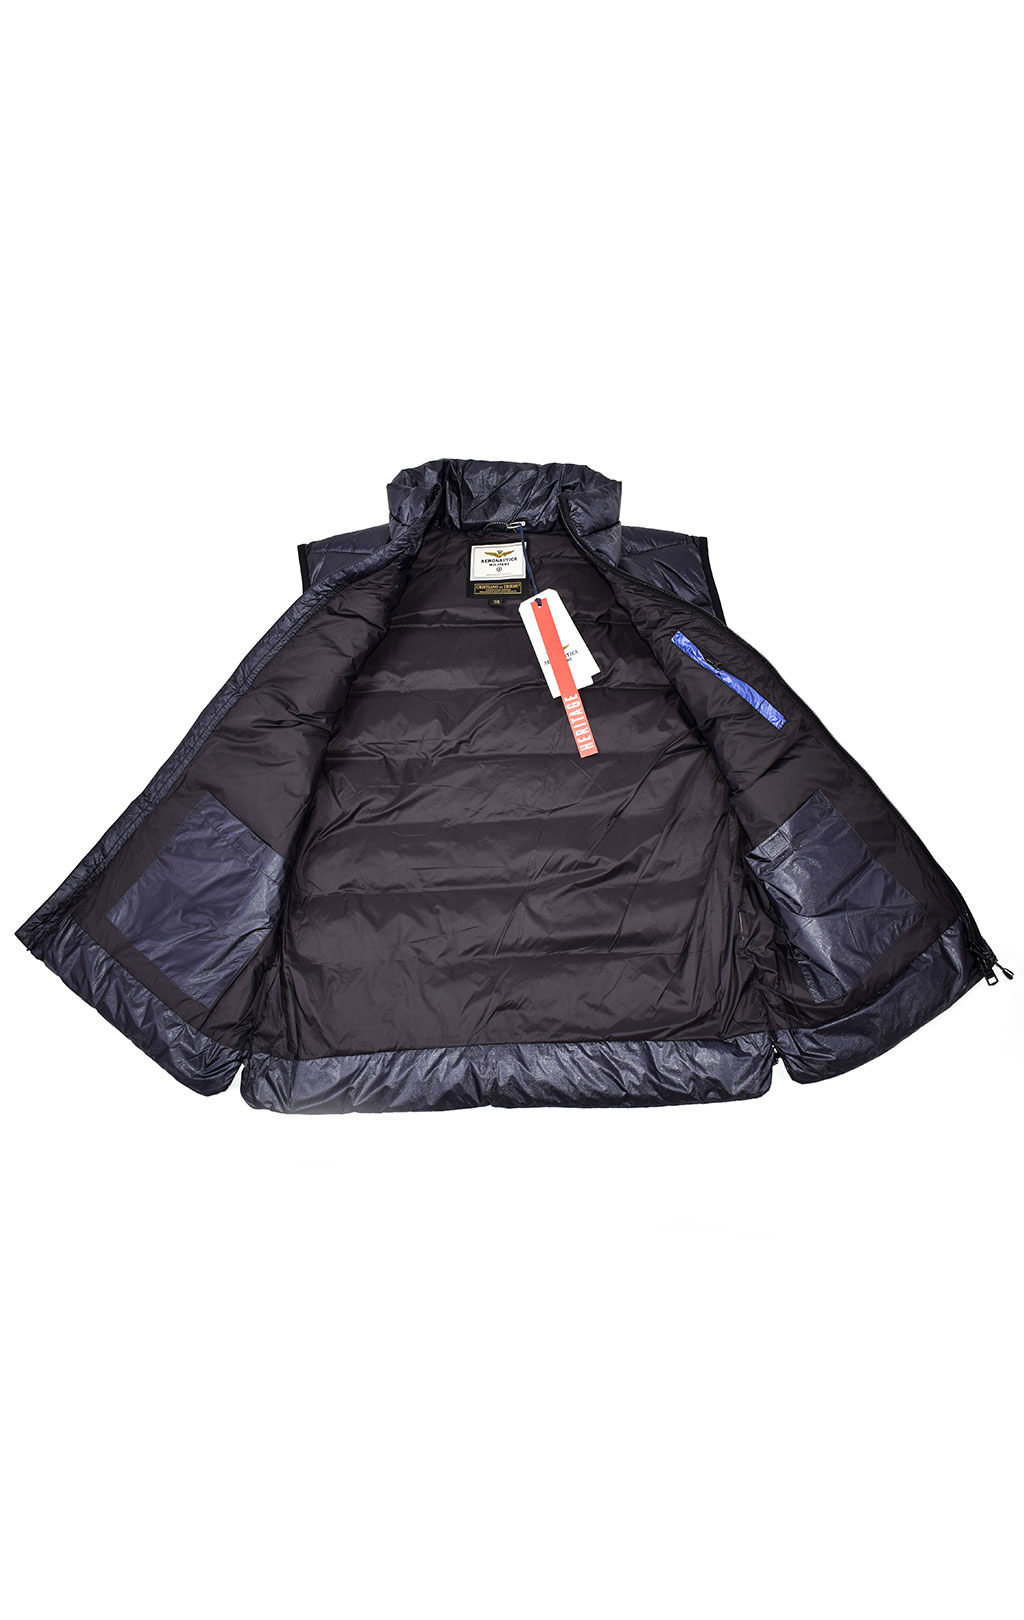 Куртка-жилет AERONAUTICA MILITARE FW 21/22 m/CN blue black (AB 1968) 